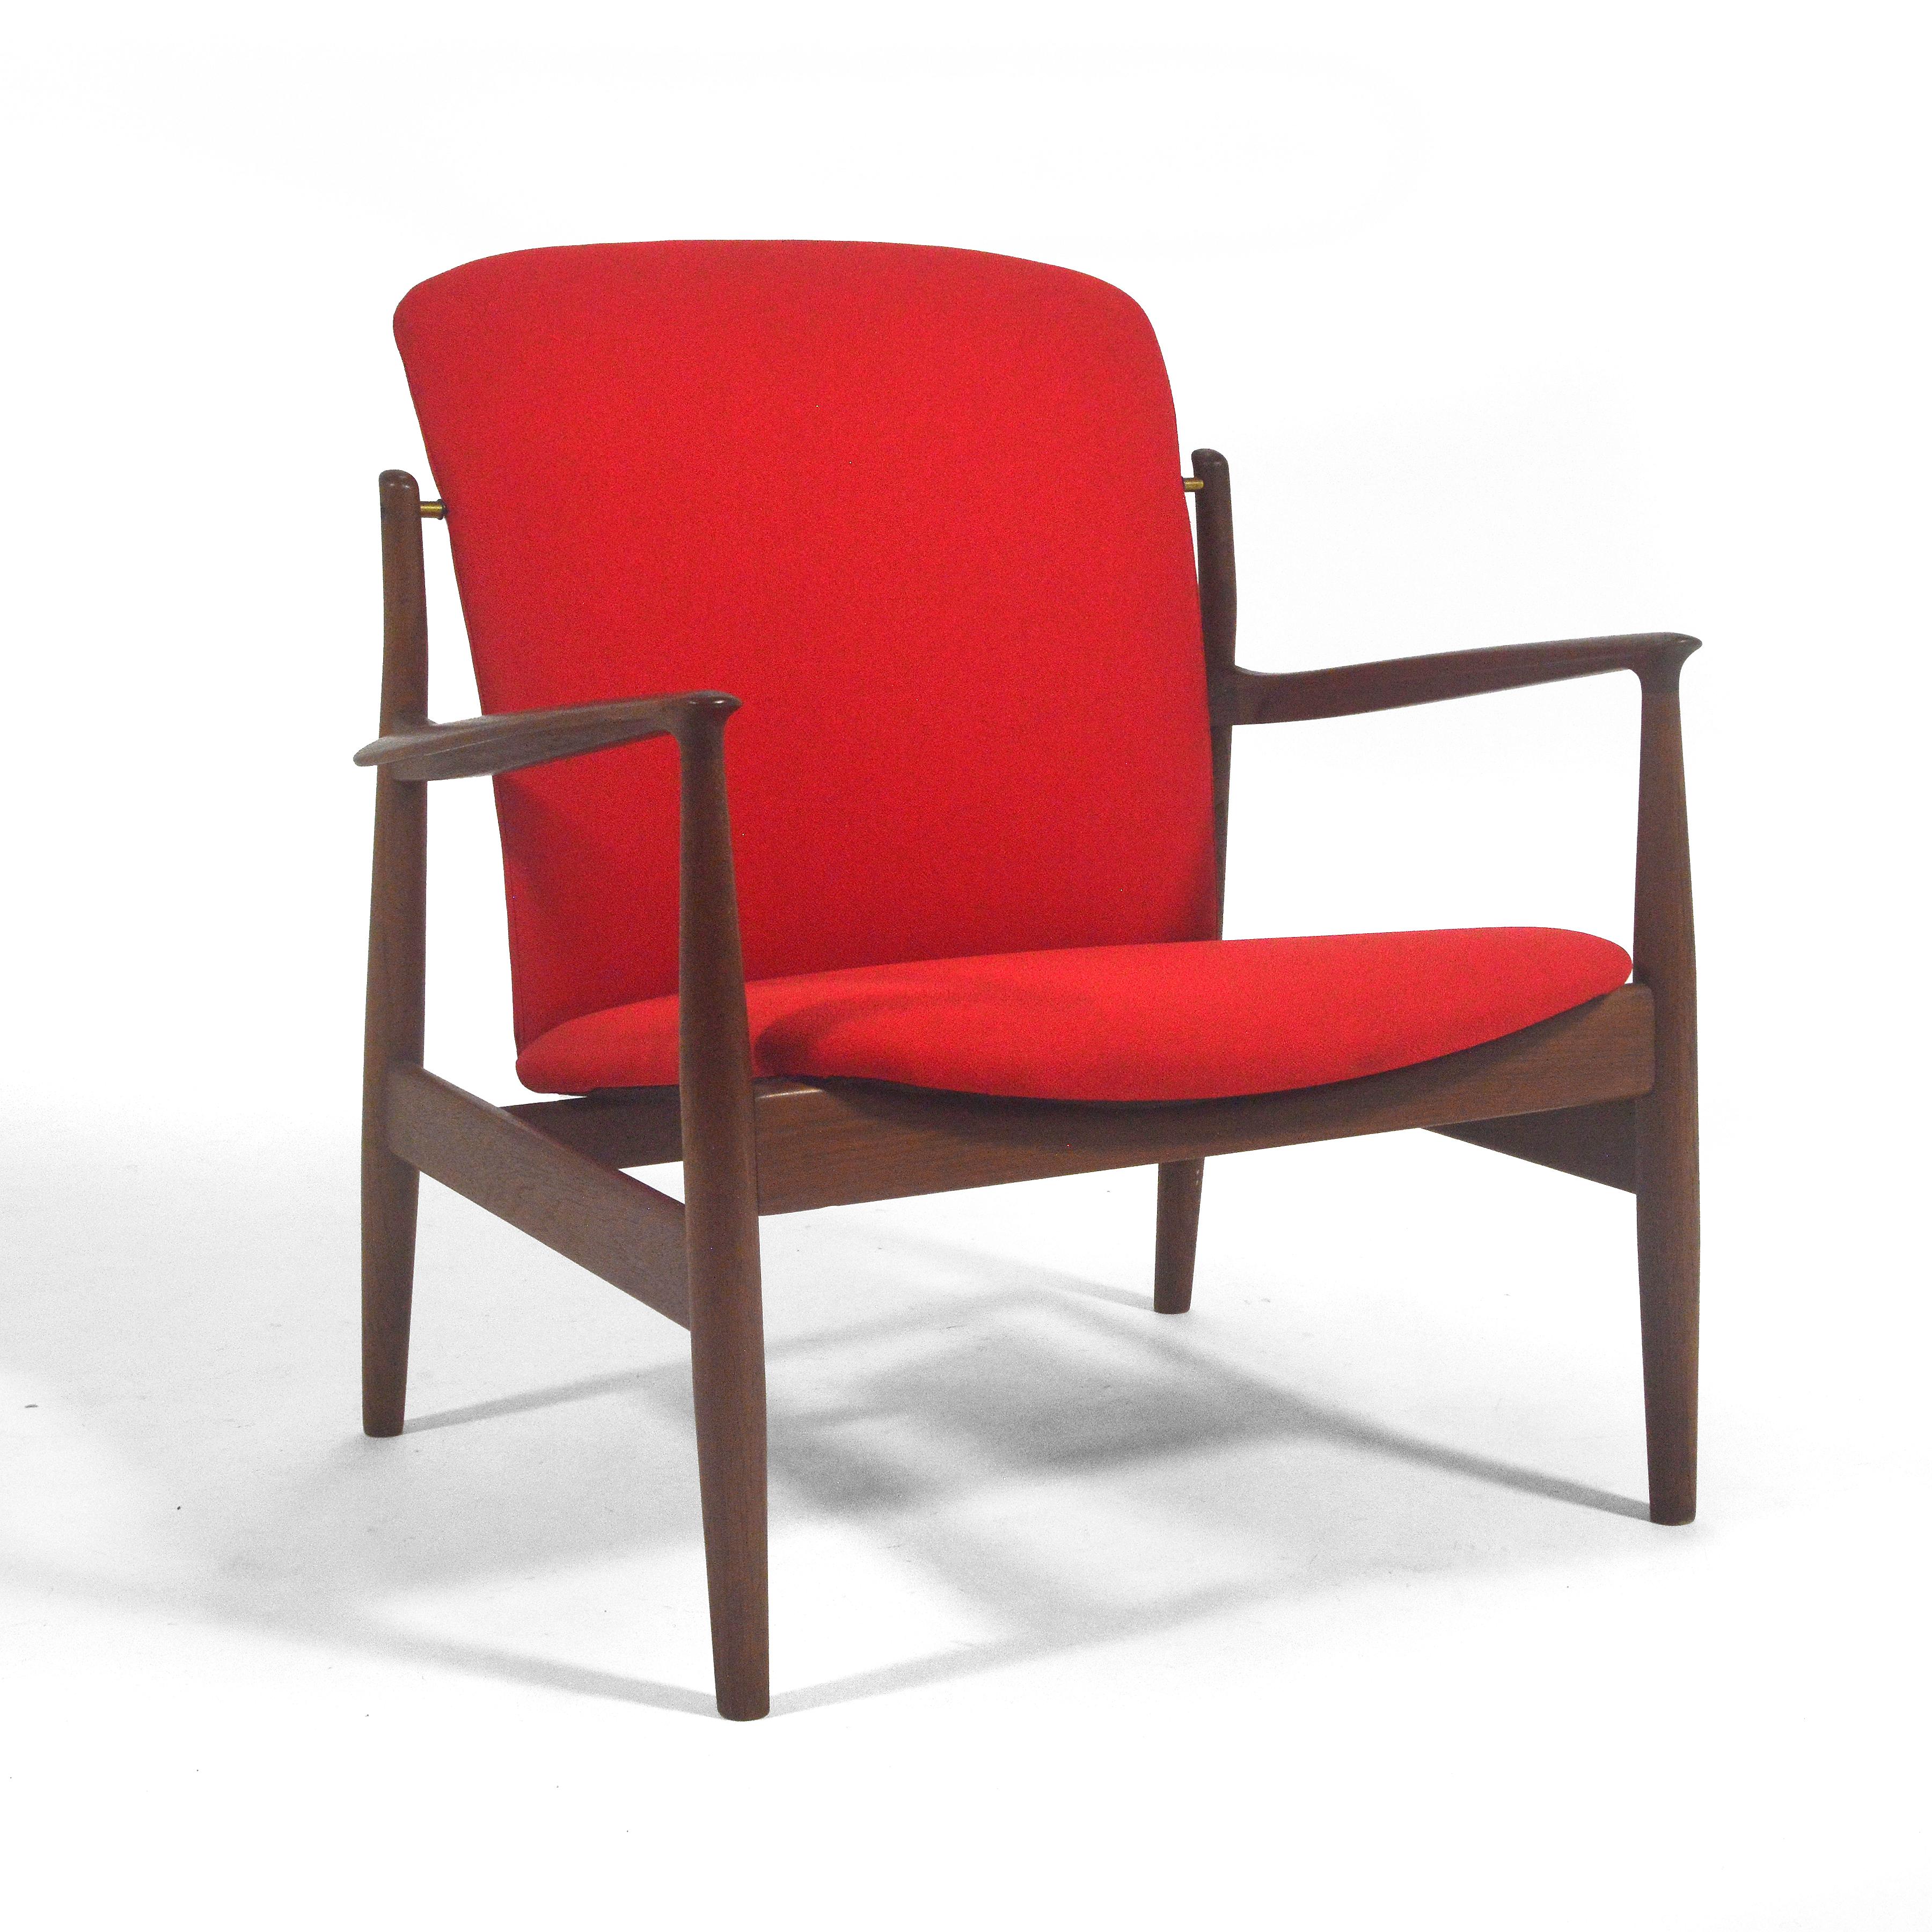 Ce beau fauteuil de Finn Juhl pour France & Sons est un modèle rare, le fd141. Elle partage des qualités avec plusieurs de ses célèbres chaises, notamment la Chieftain, la chaise n° 45 et la chaise du délégué. Le cadre en teck foncé et riche